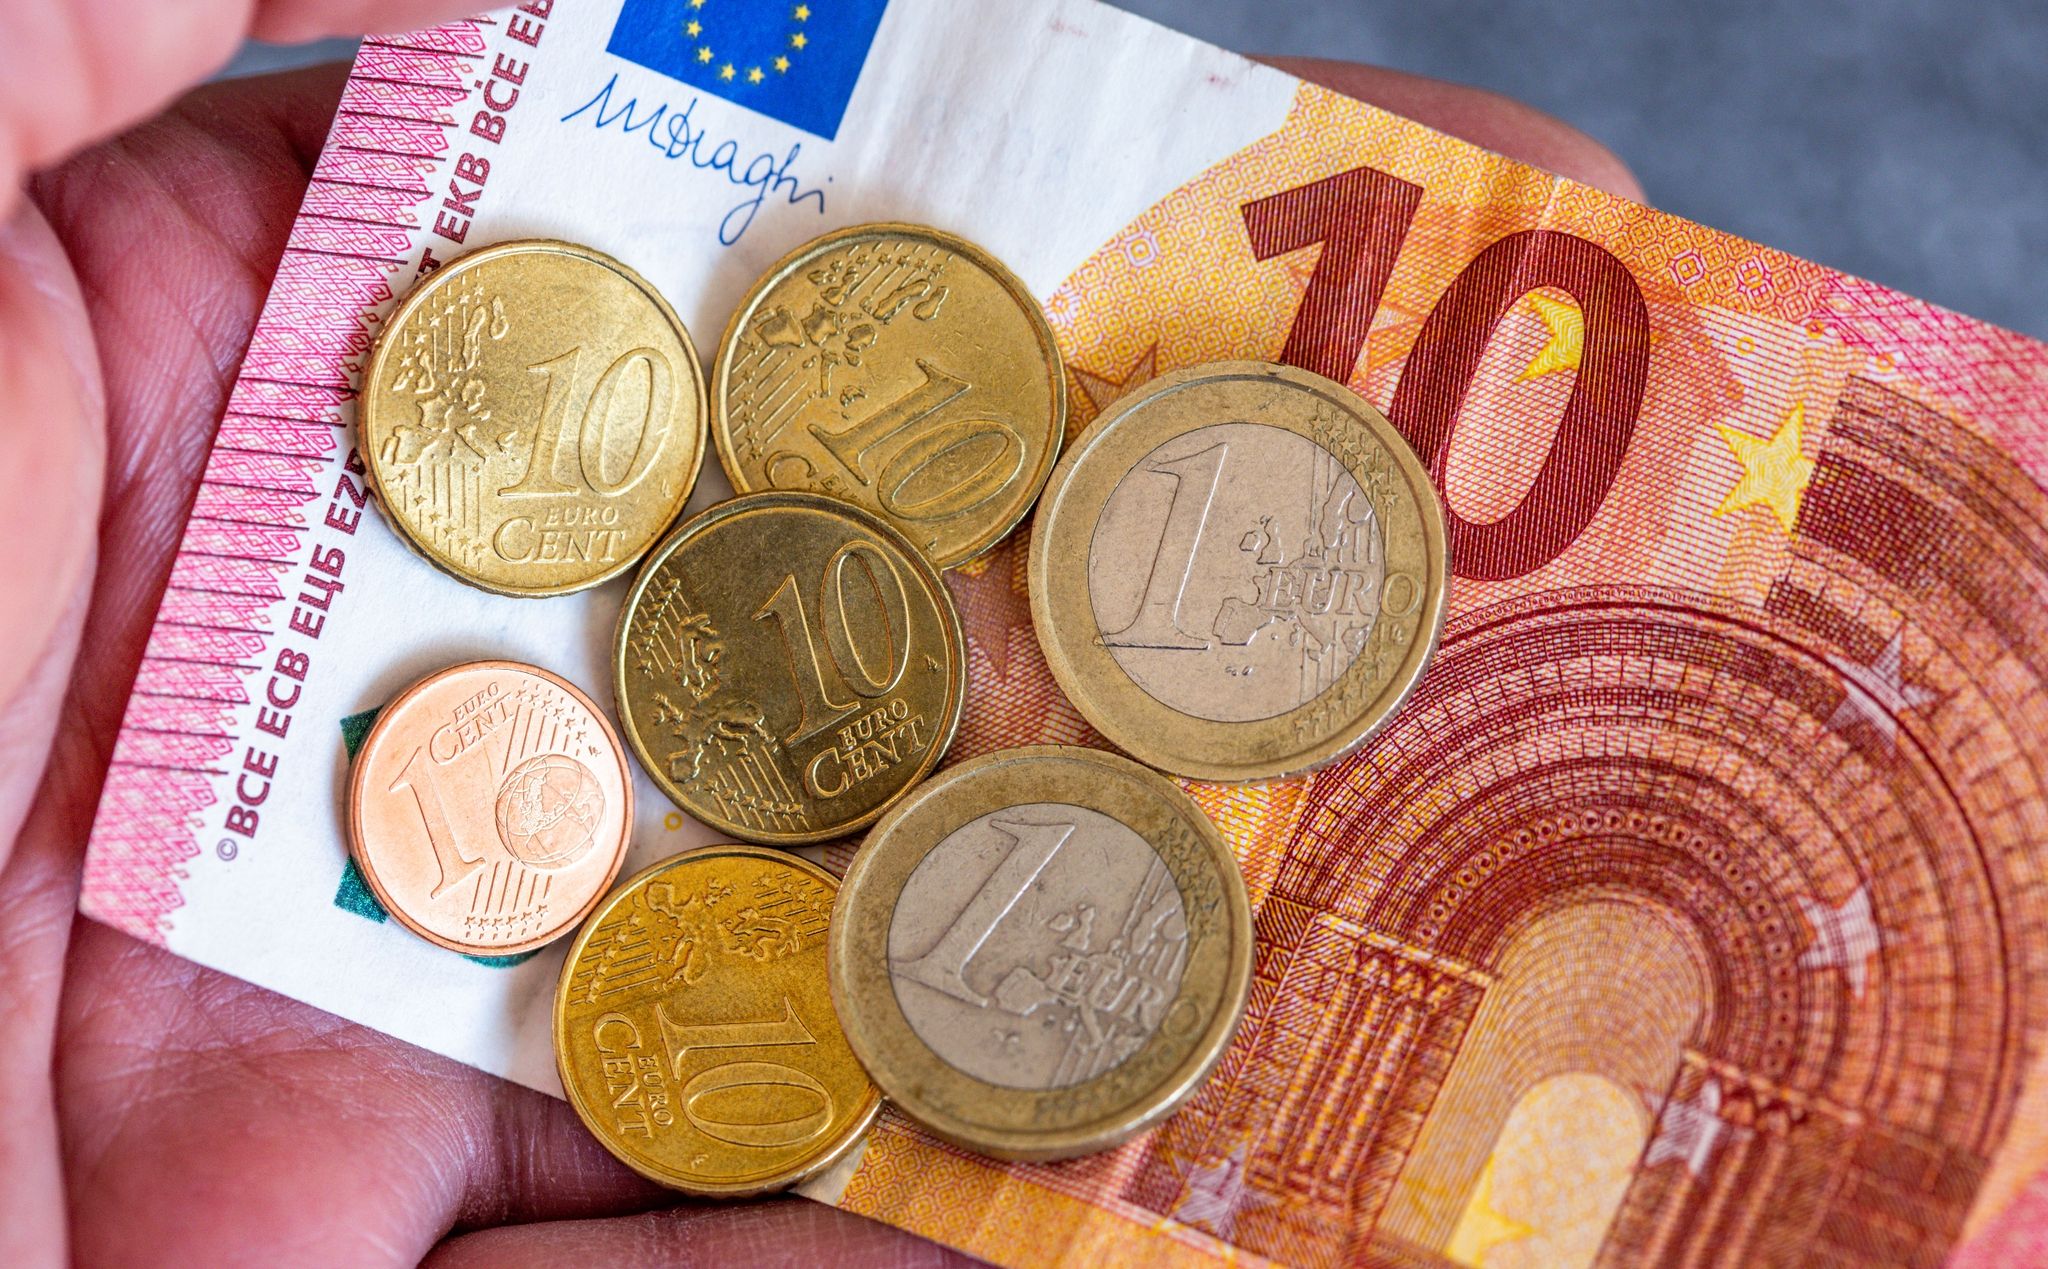 Deutlicher Rückgang im Niedriglohnsektor, aber Millionen verdienen weniger als 13 Euro pro Stunde